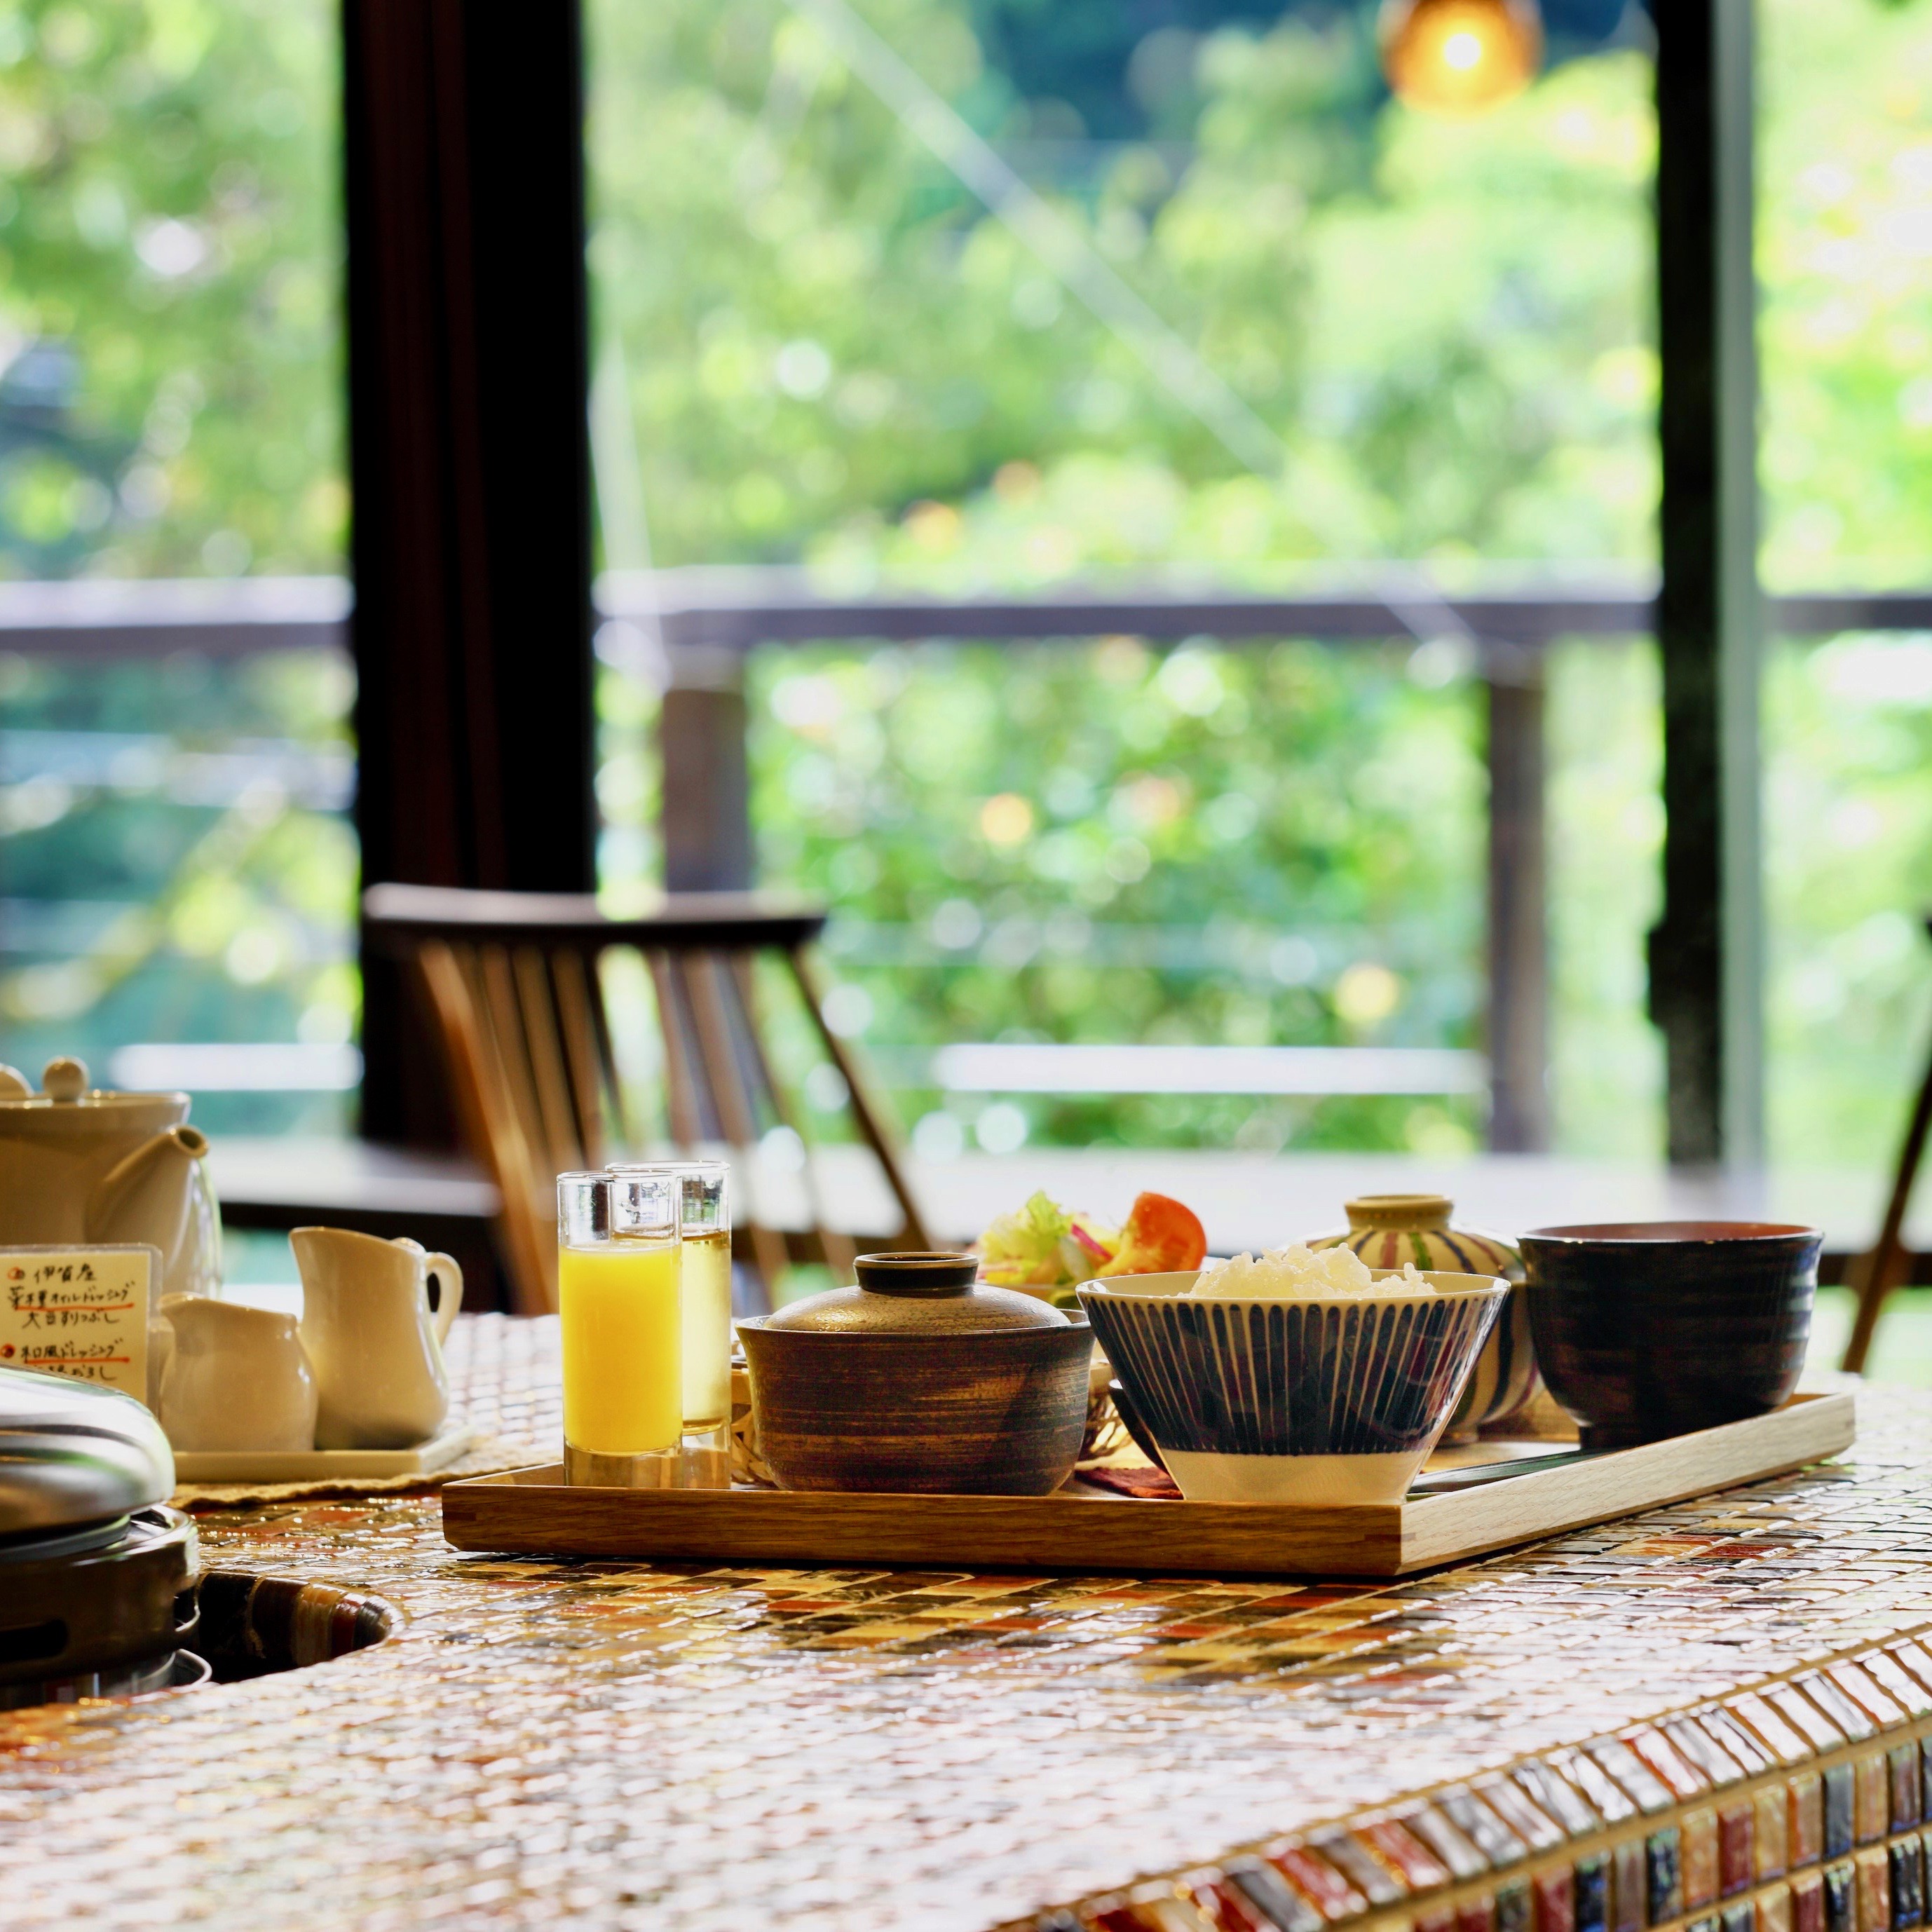 伊賀米コシヒカリをおいしく食べるがコンセプト☆伊賀のおいしい朝ごはん。おかわり制で提供します